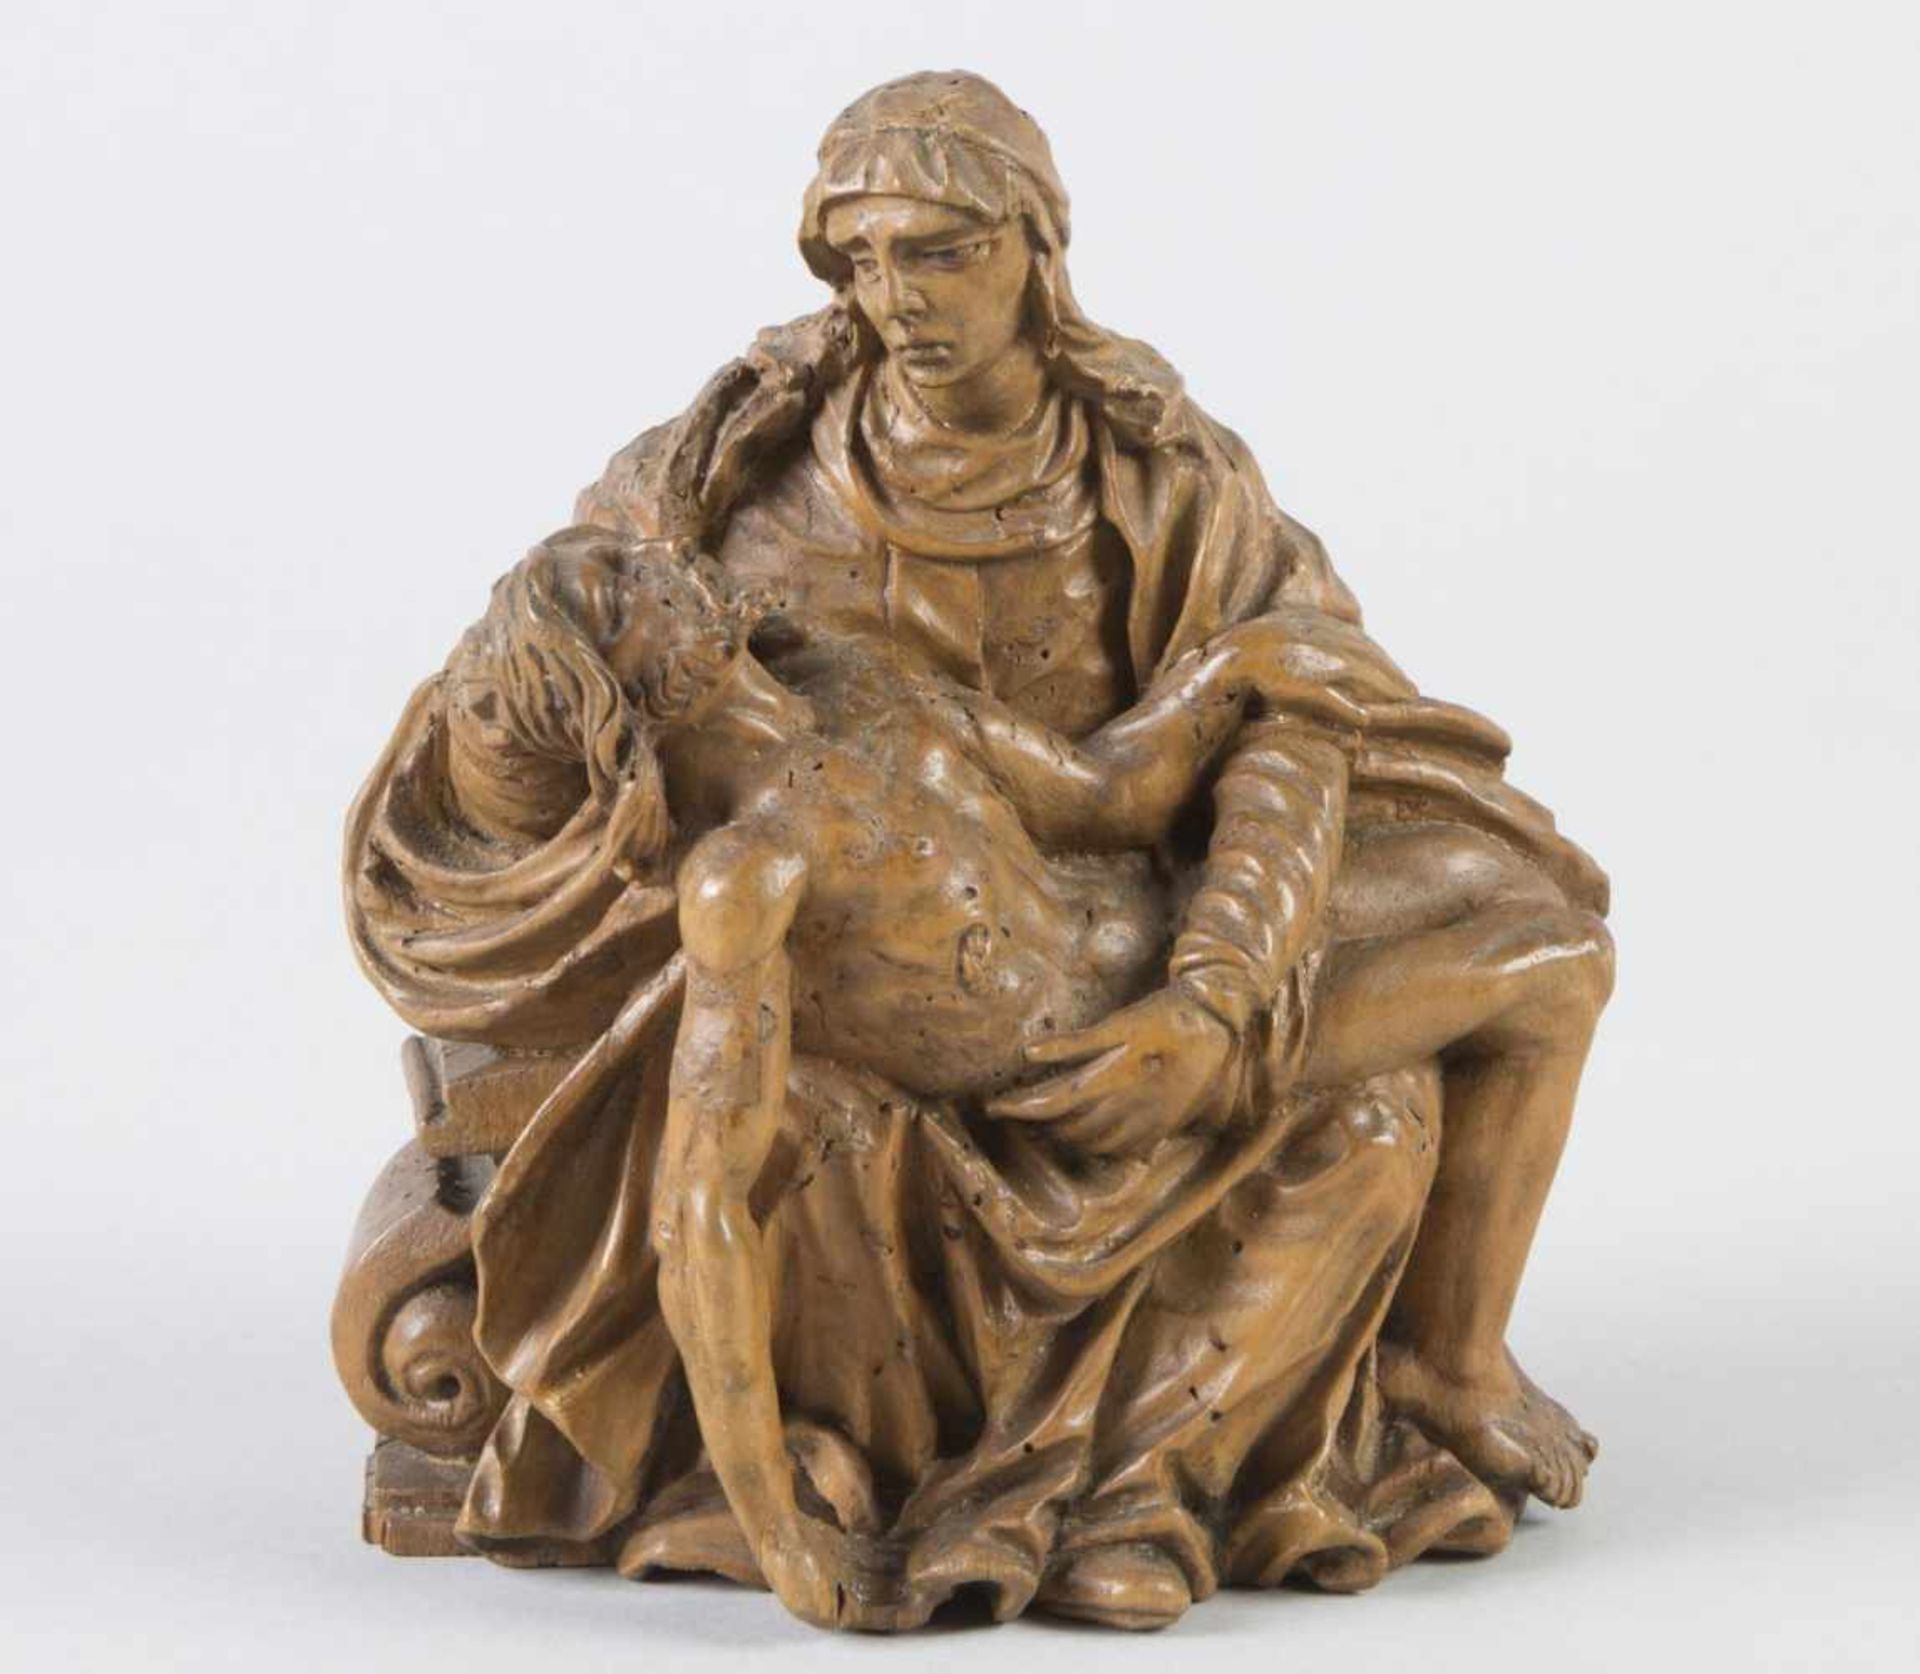 PietàHolz, geschnitzt. Rückseite summarisch. Ausdrucksstarke Darstellung der trauernden Mutter